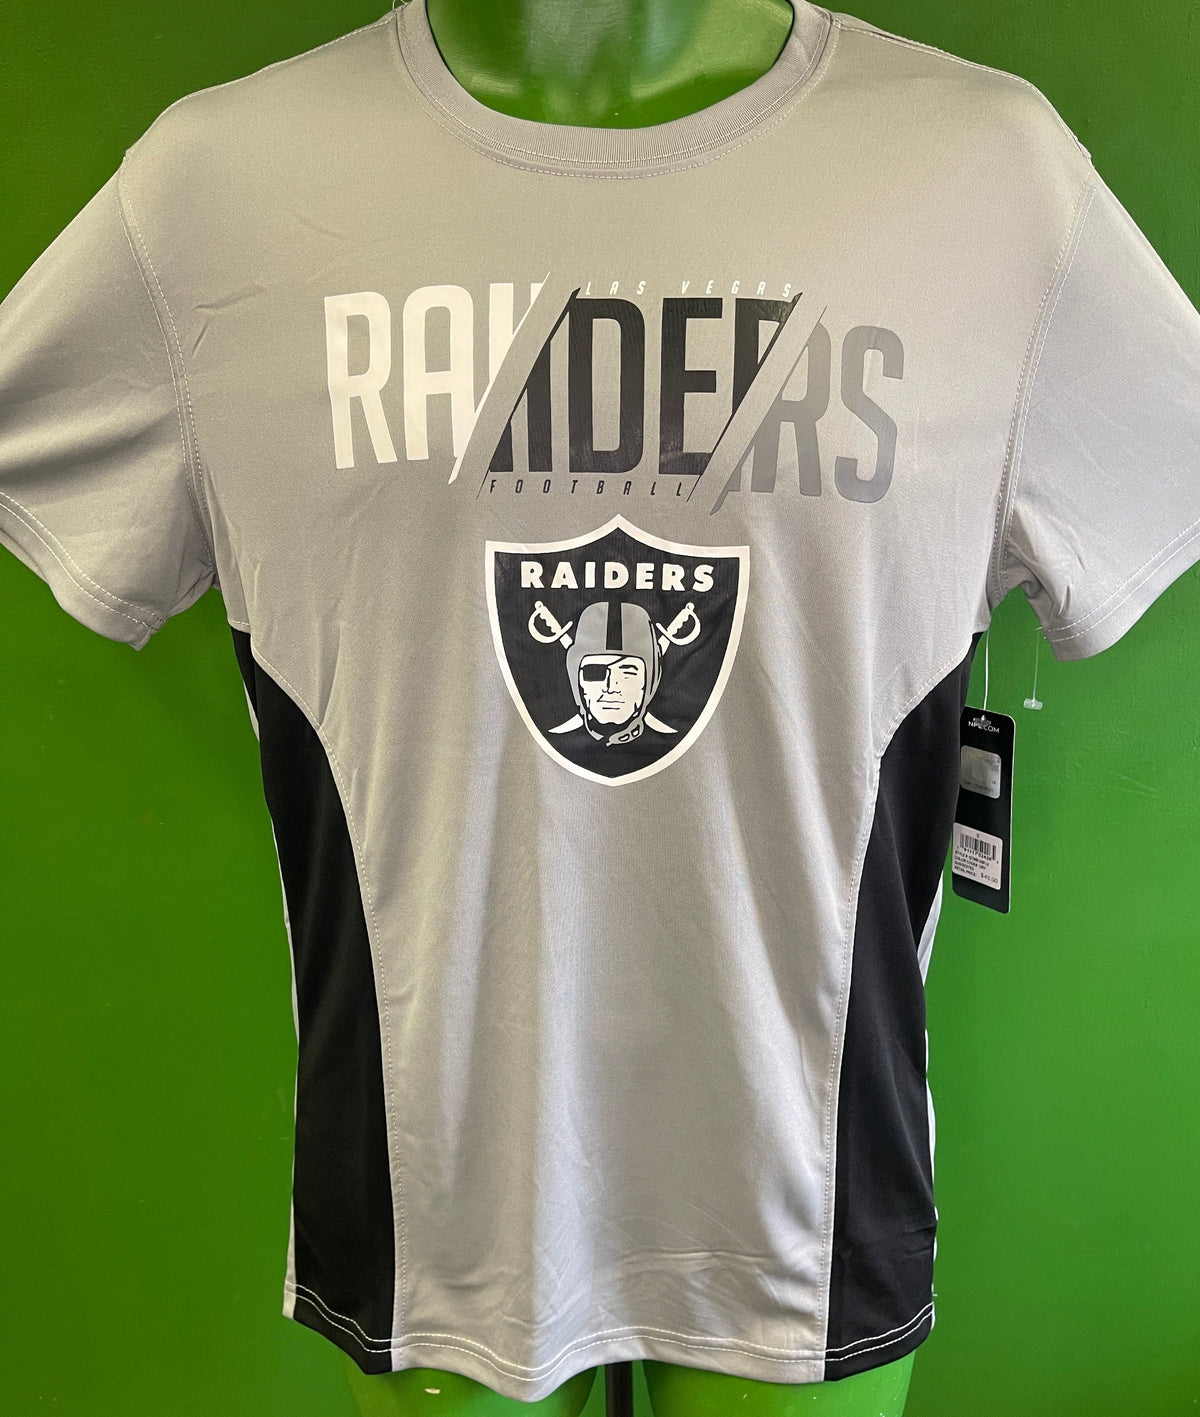 NFL Las Vegas Raiders Grey Colourblock T-Shirt Men's Small NWT